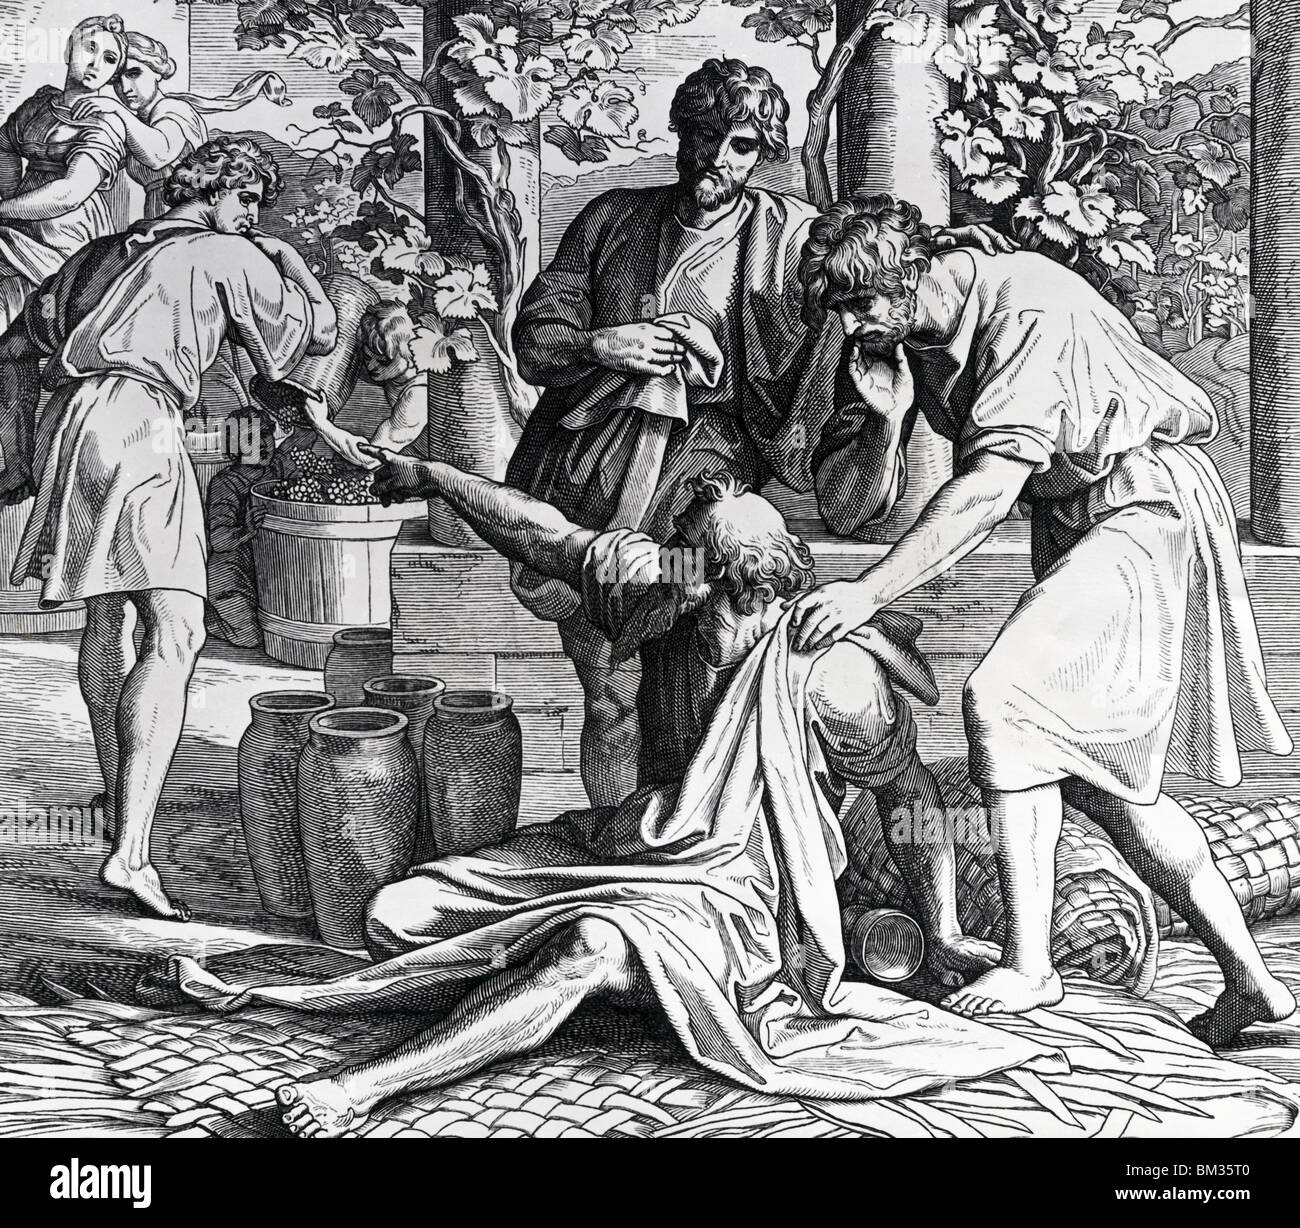 Noé maudit Ham pour sa moquerie par Julius Schnorr von Carolsfeld, illustration, (1794-1872) Banque D'Images